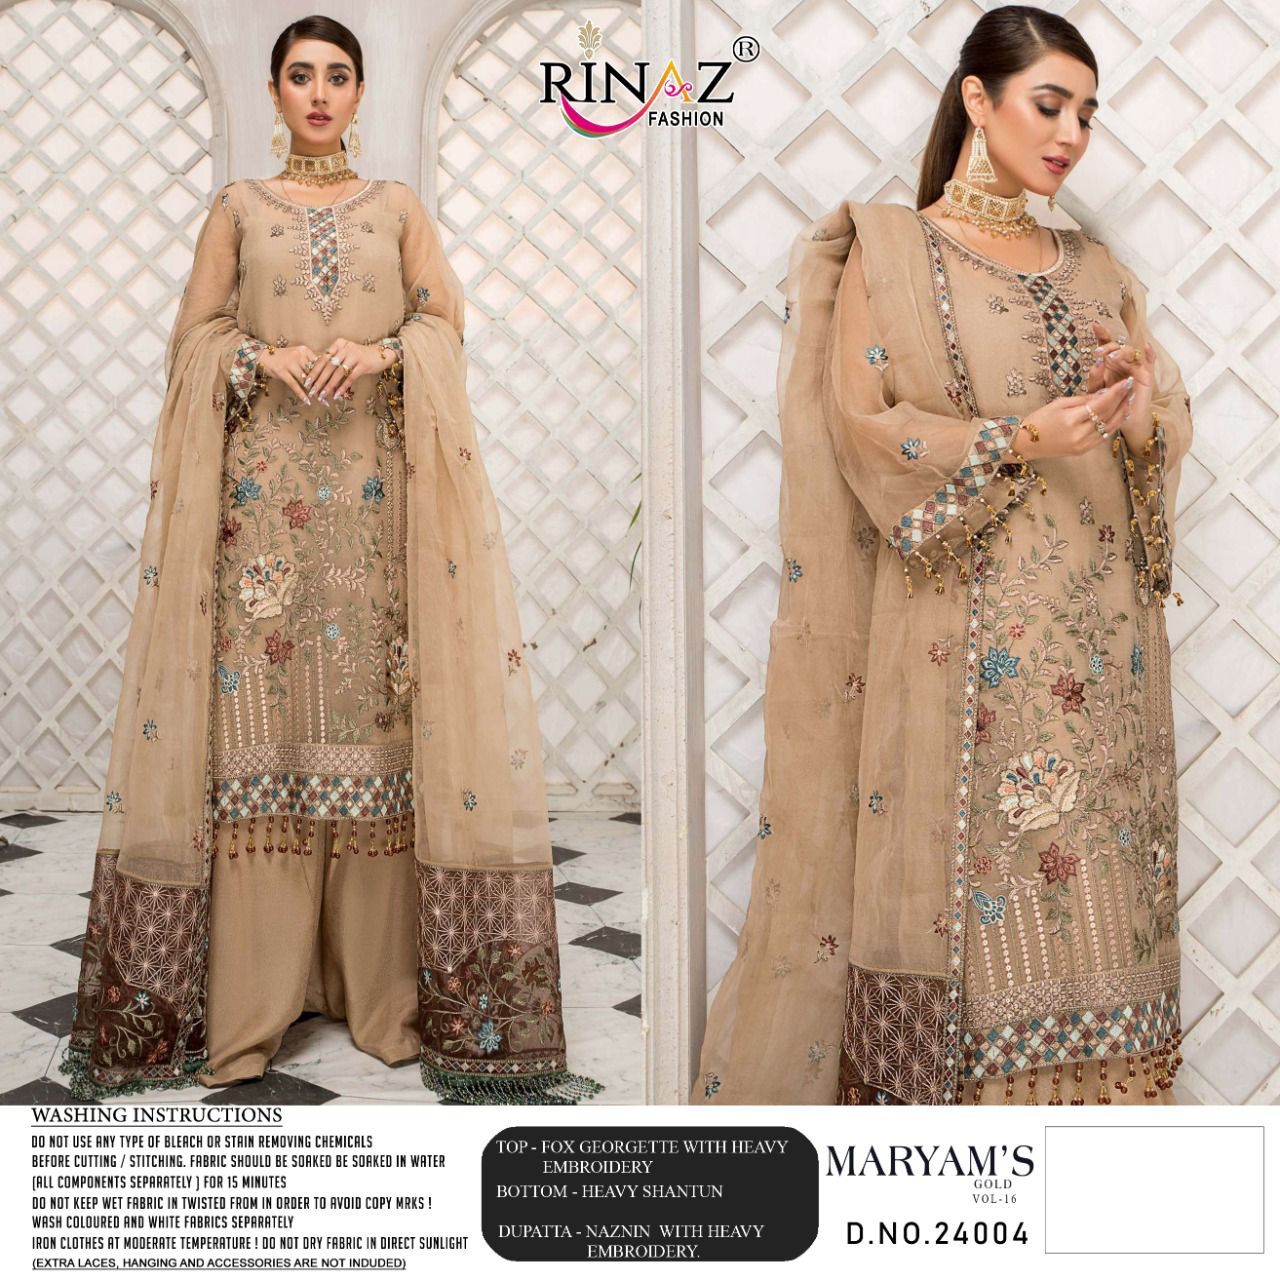 Rinaz Fashion Maryam's Gold 24004